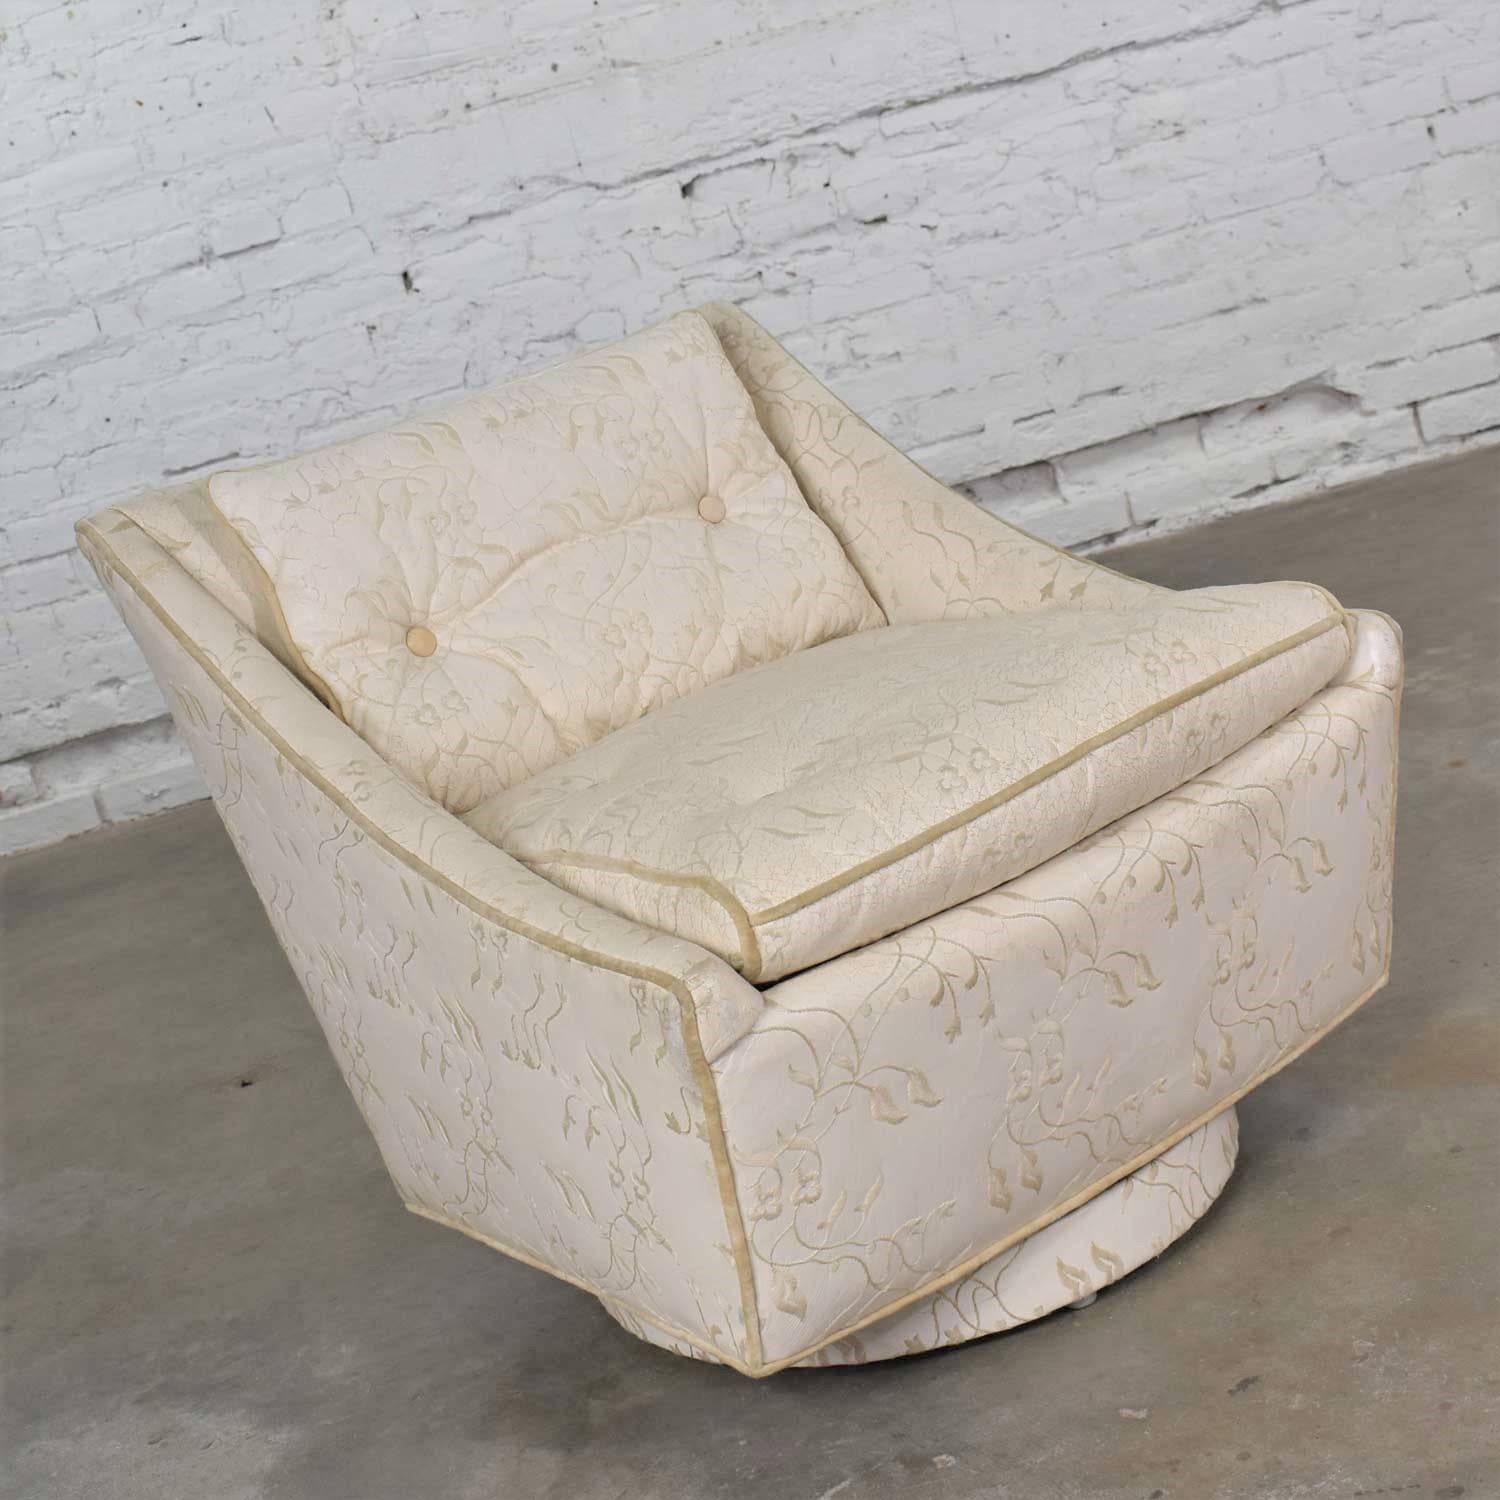 Charmant petit fauteuil pivotant Art Déco en cuir blanc brodé par Oxford Ltd. de Chicago. Il est en très bon état. Le cuir/le similicuir est très patiné et présente des craquelures et des fissures, mais il n'est pas troué. Nous l'avons nettoyée et